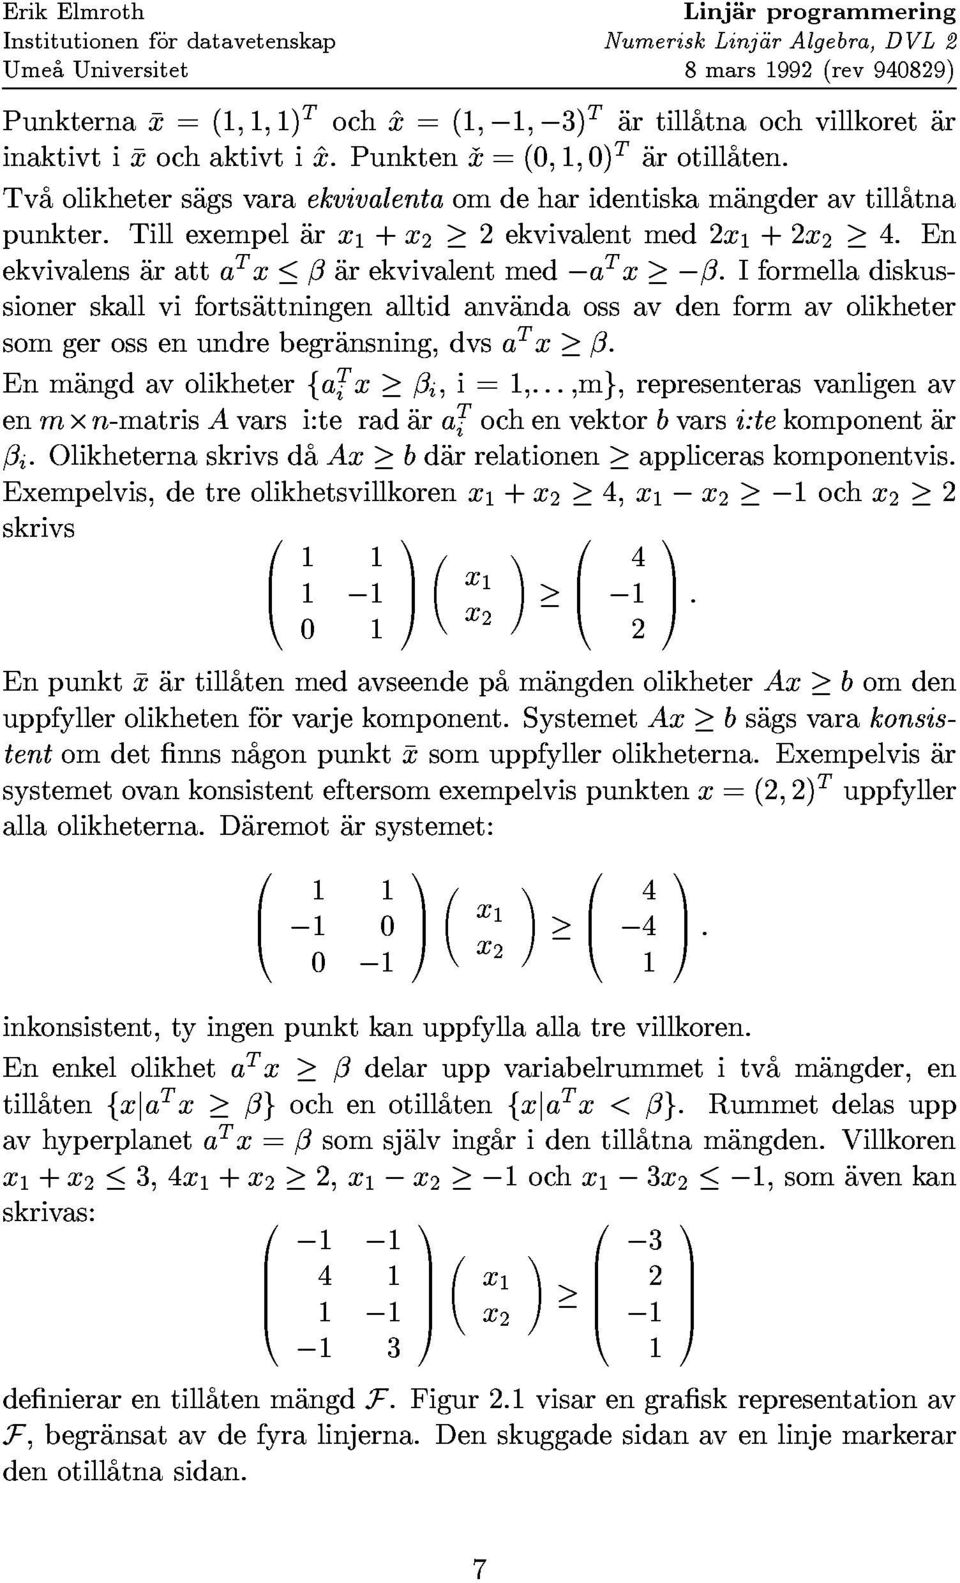 Tvaolikhetersagsvaraekvivalentaomdeharidentiskamangderavtillatna inaktivtixochaktivti^x.punktenx=(0;1;0)tarotillaten.